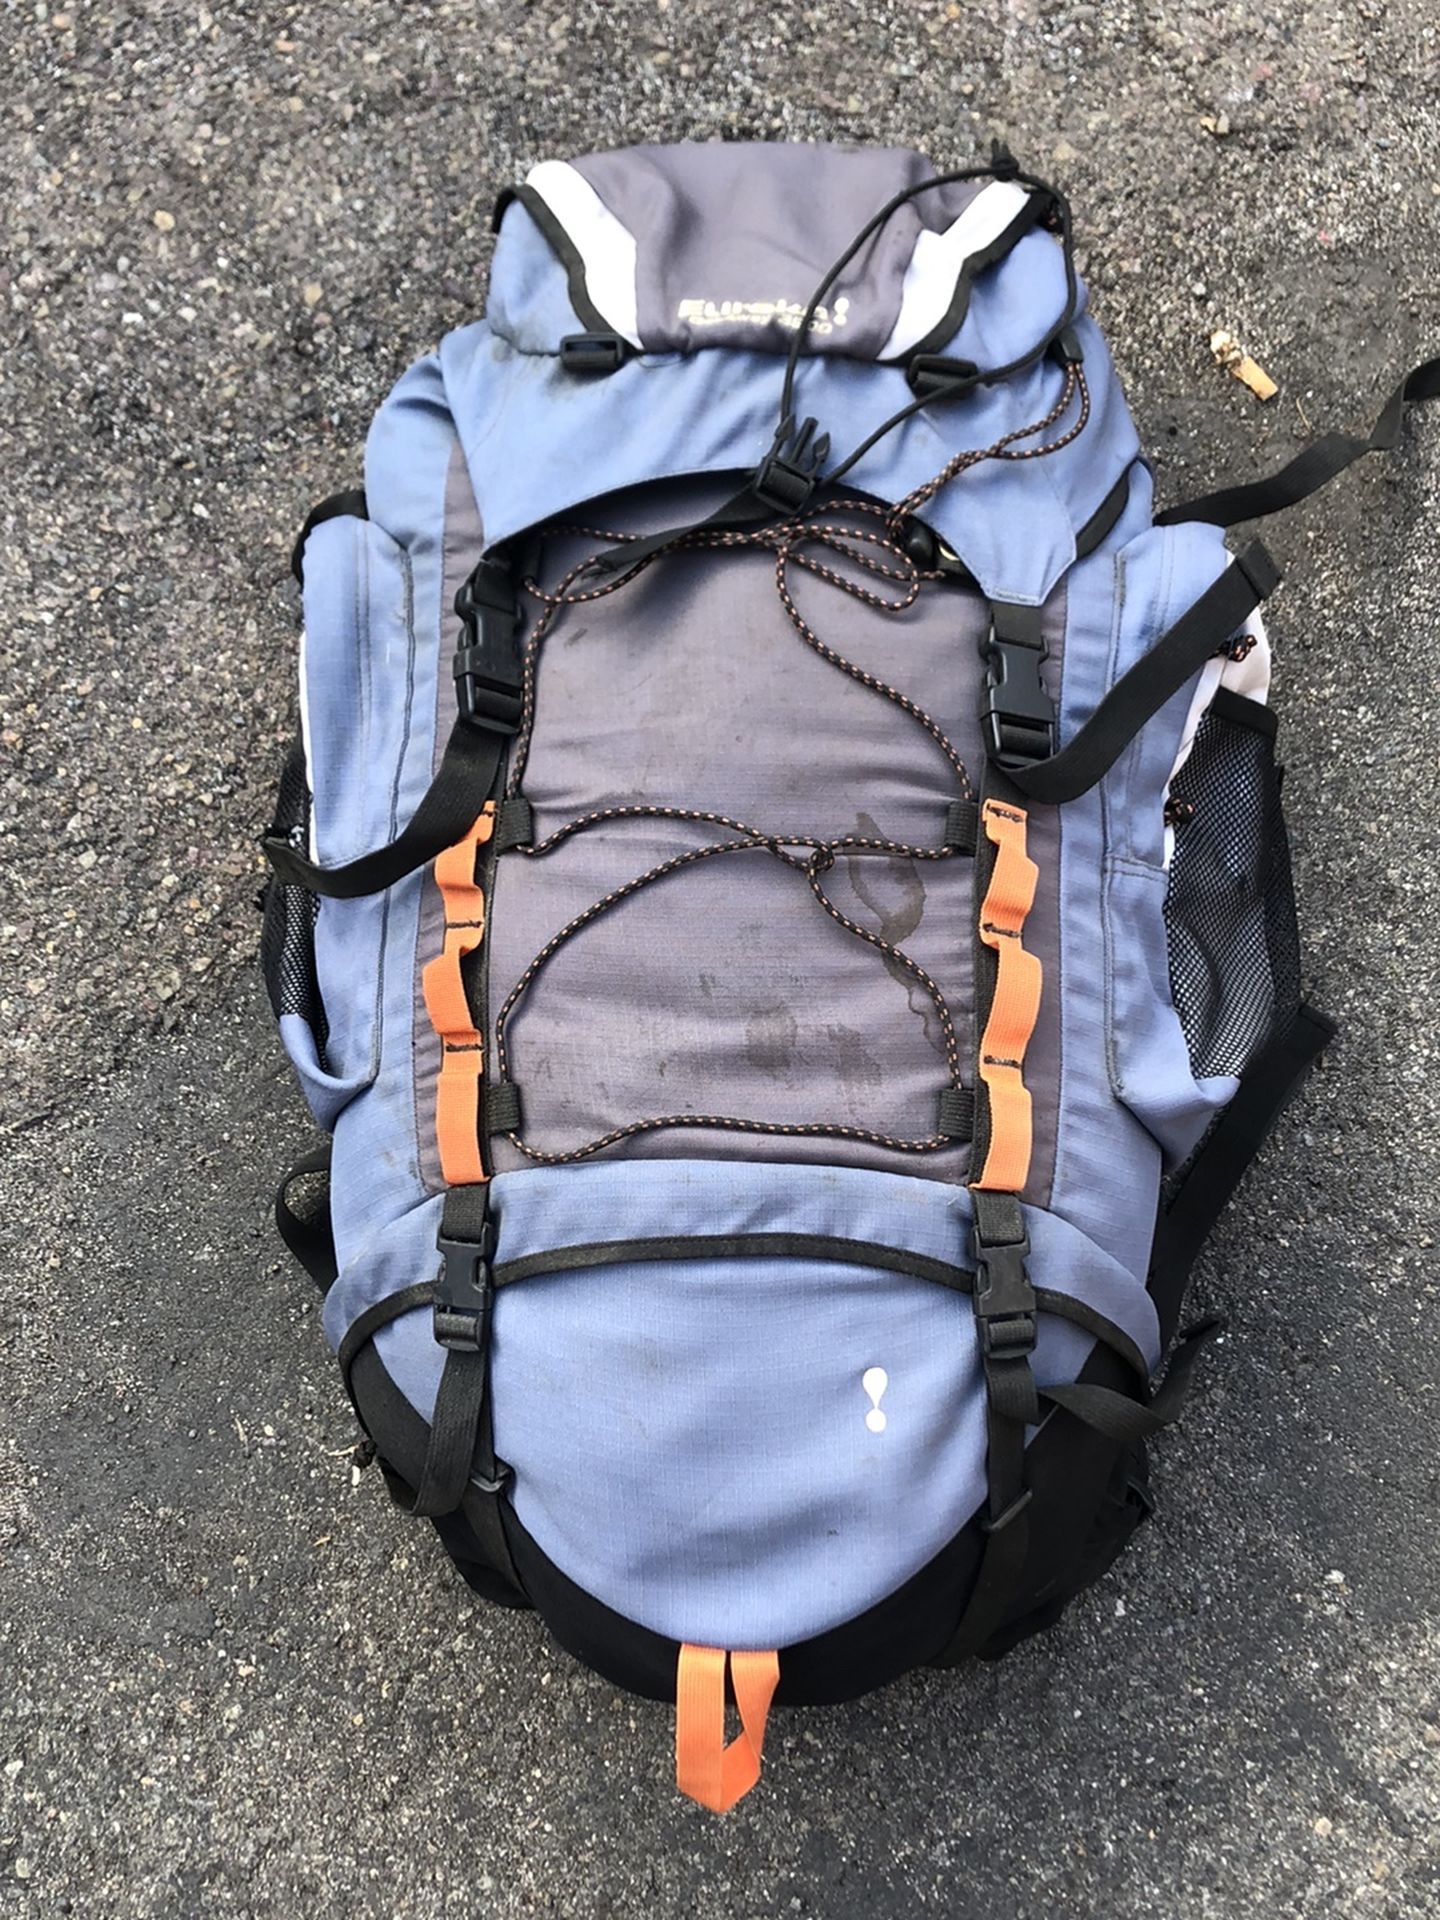 Eureka Getaway 3900 Backpack With 2 Sleeping Bags